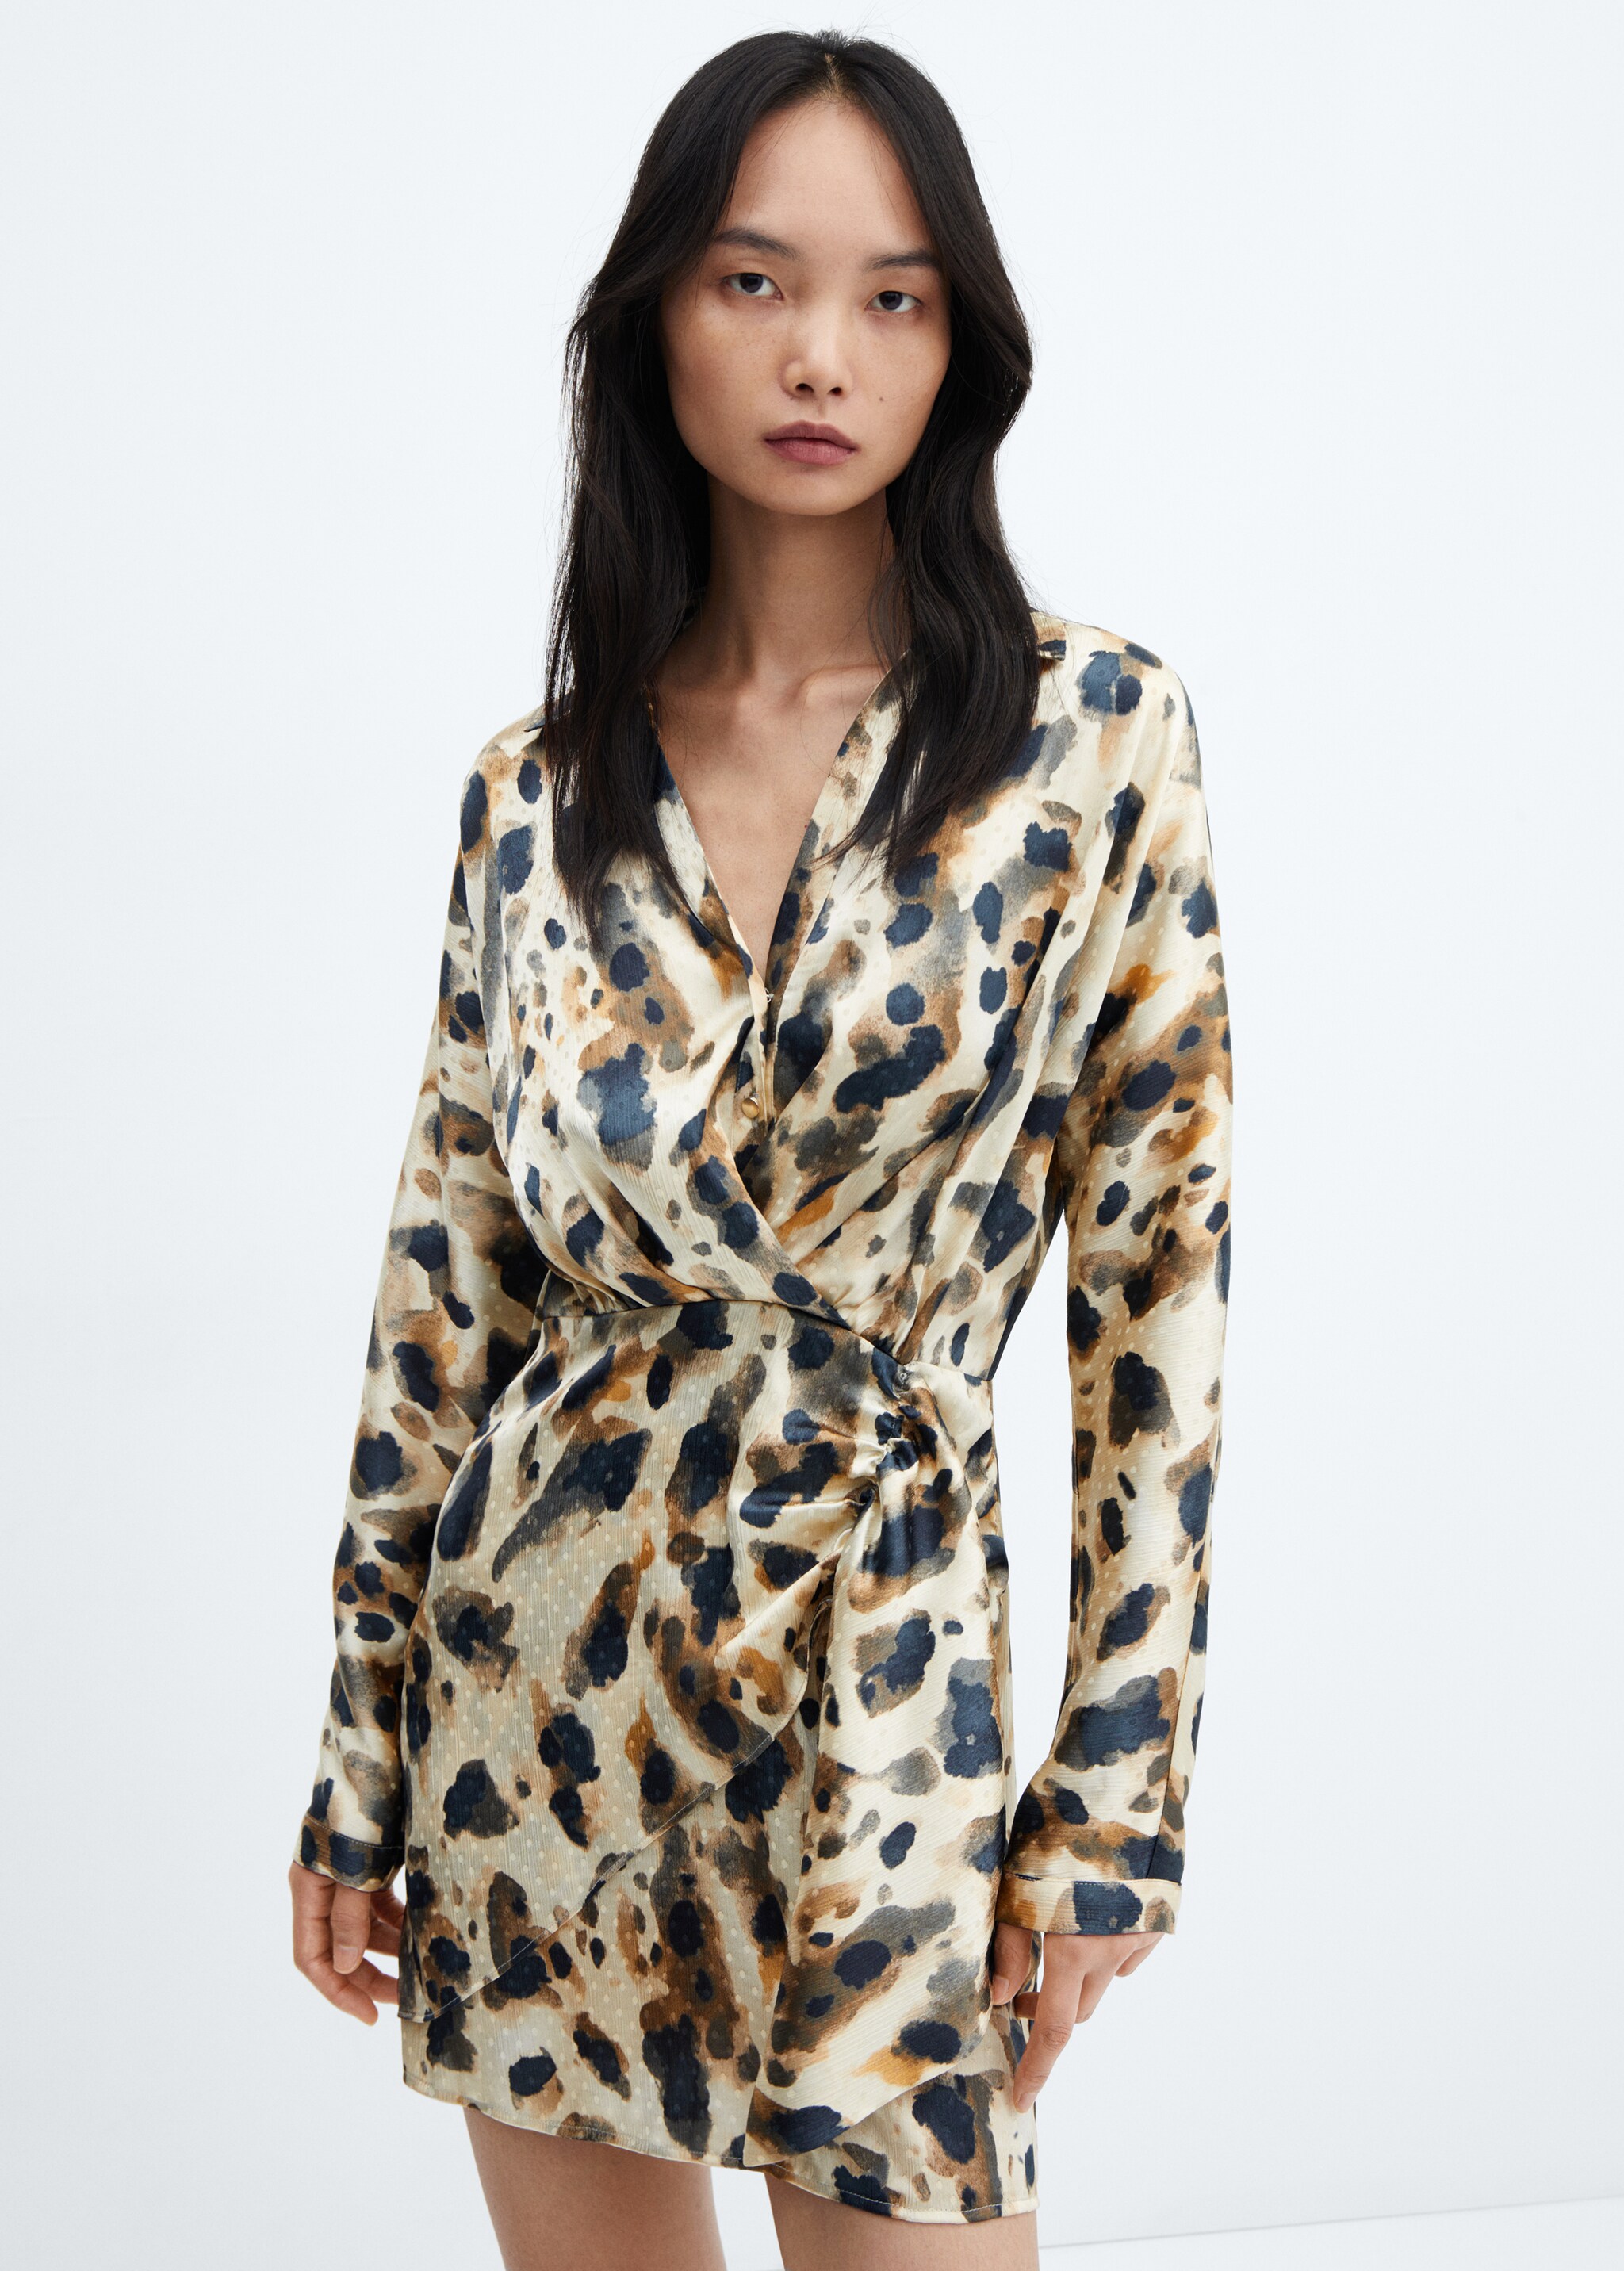 Атласное платье с леопардовым принтом - Средний план